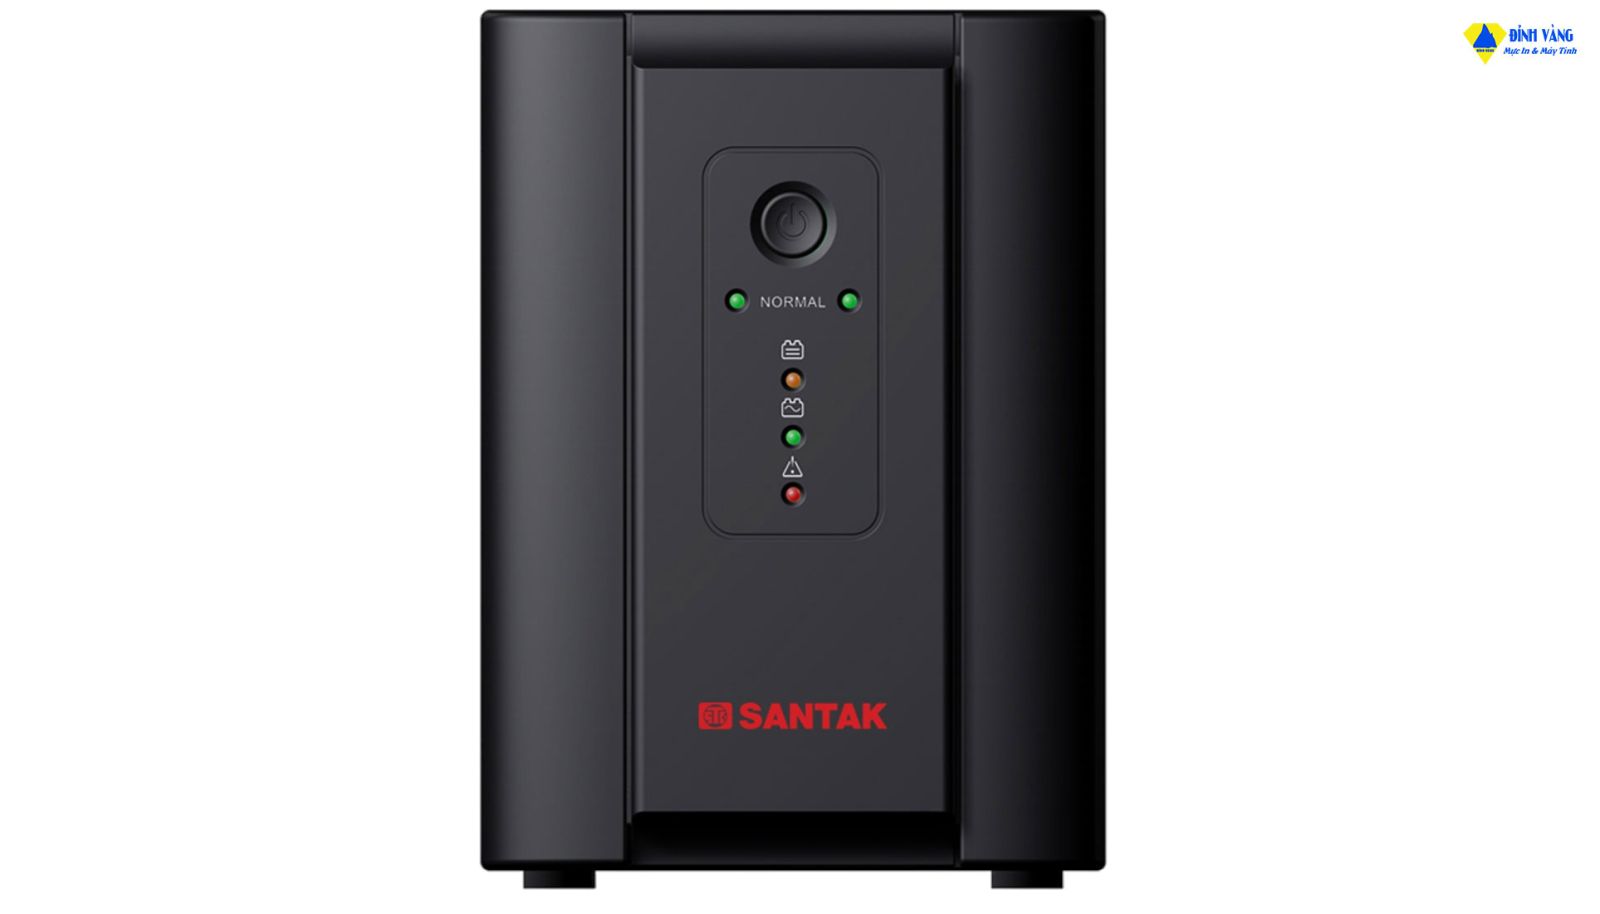 Bộ lưu điện UPS Santak Blazer 2000 Pro có khả năng cung cấp nguồn điện ổn định với công suất cực kỳ mạnh mẽ.